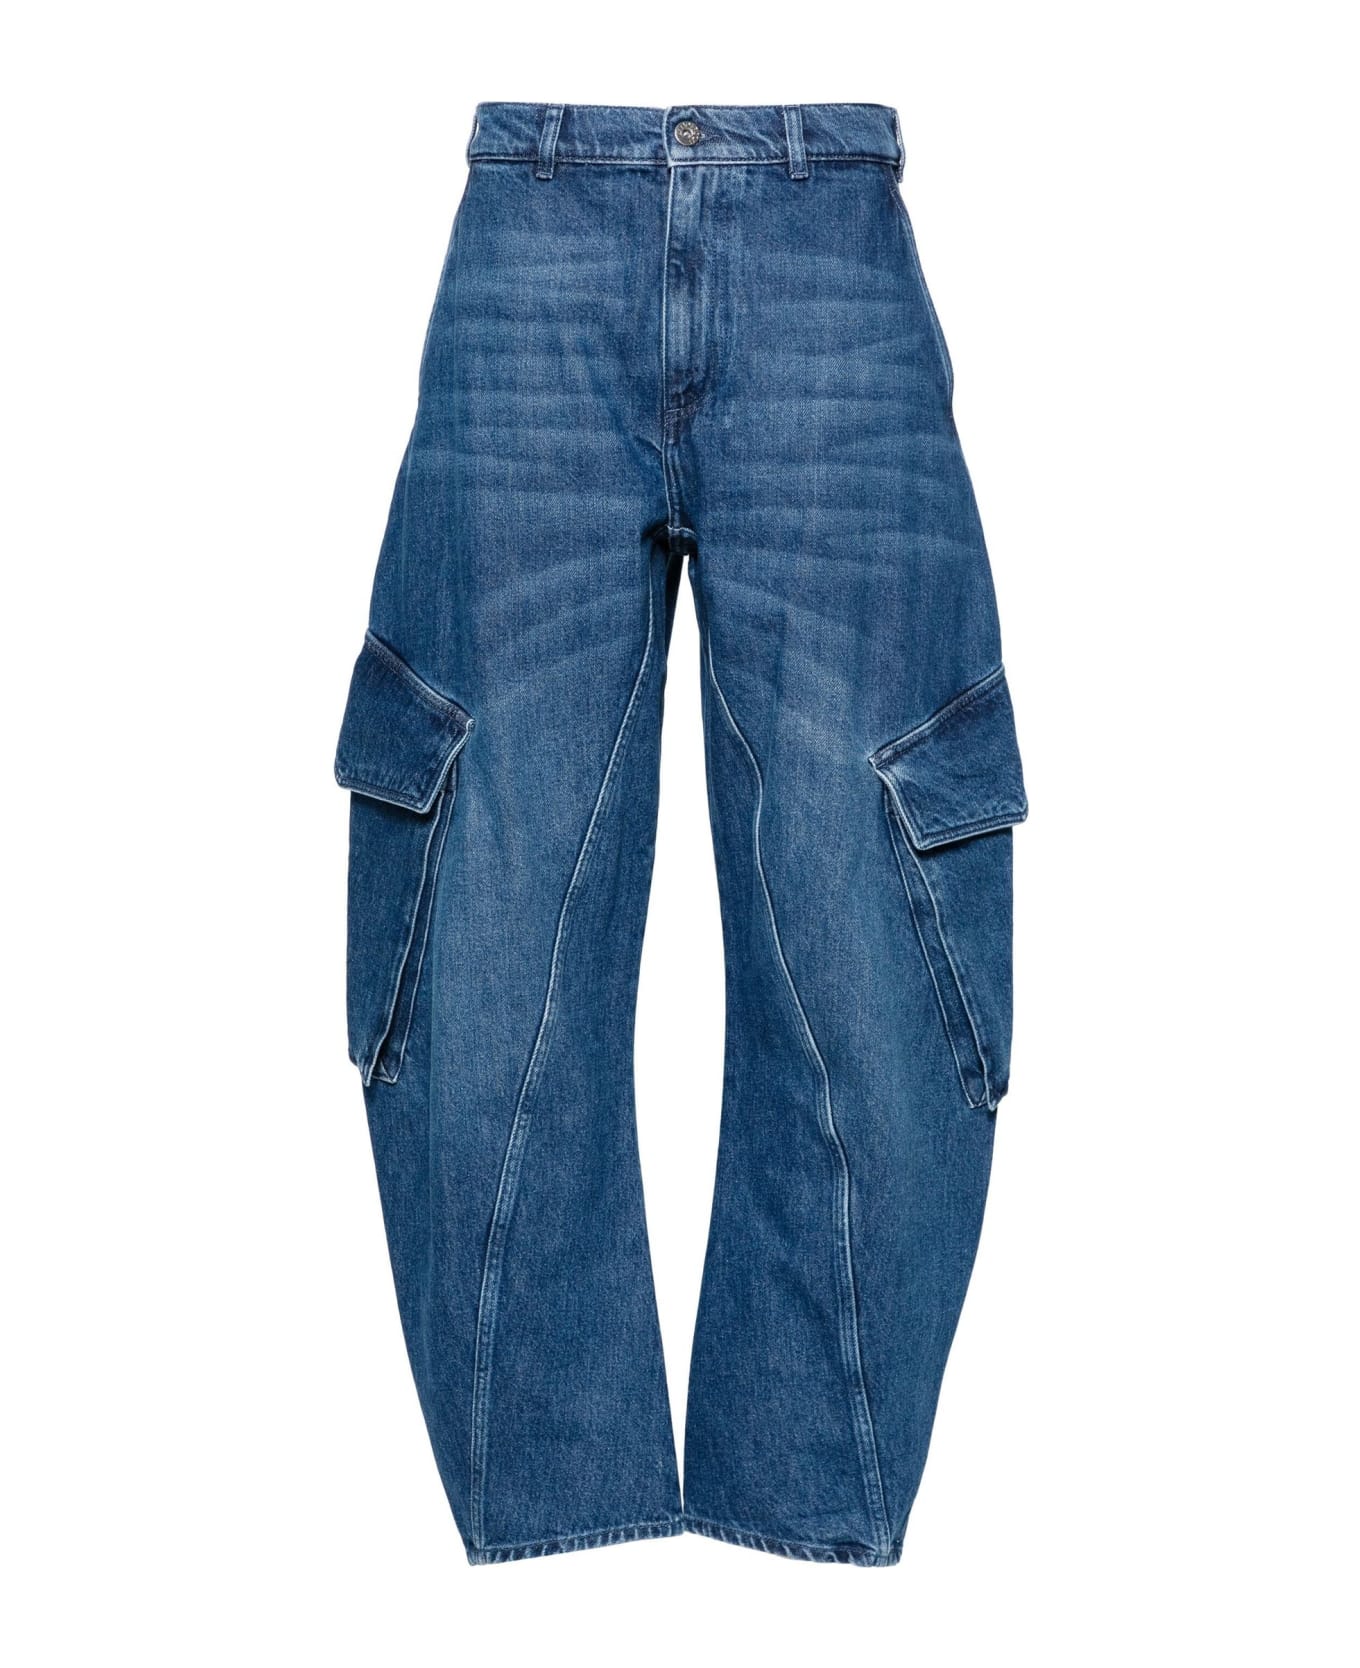 J.W. Anderson Indigo Blue Cotton Blend Jeans - Blue